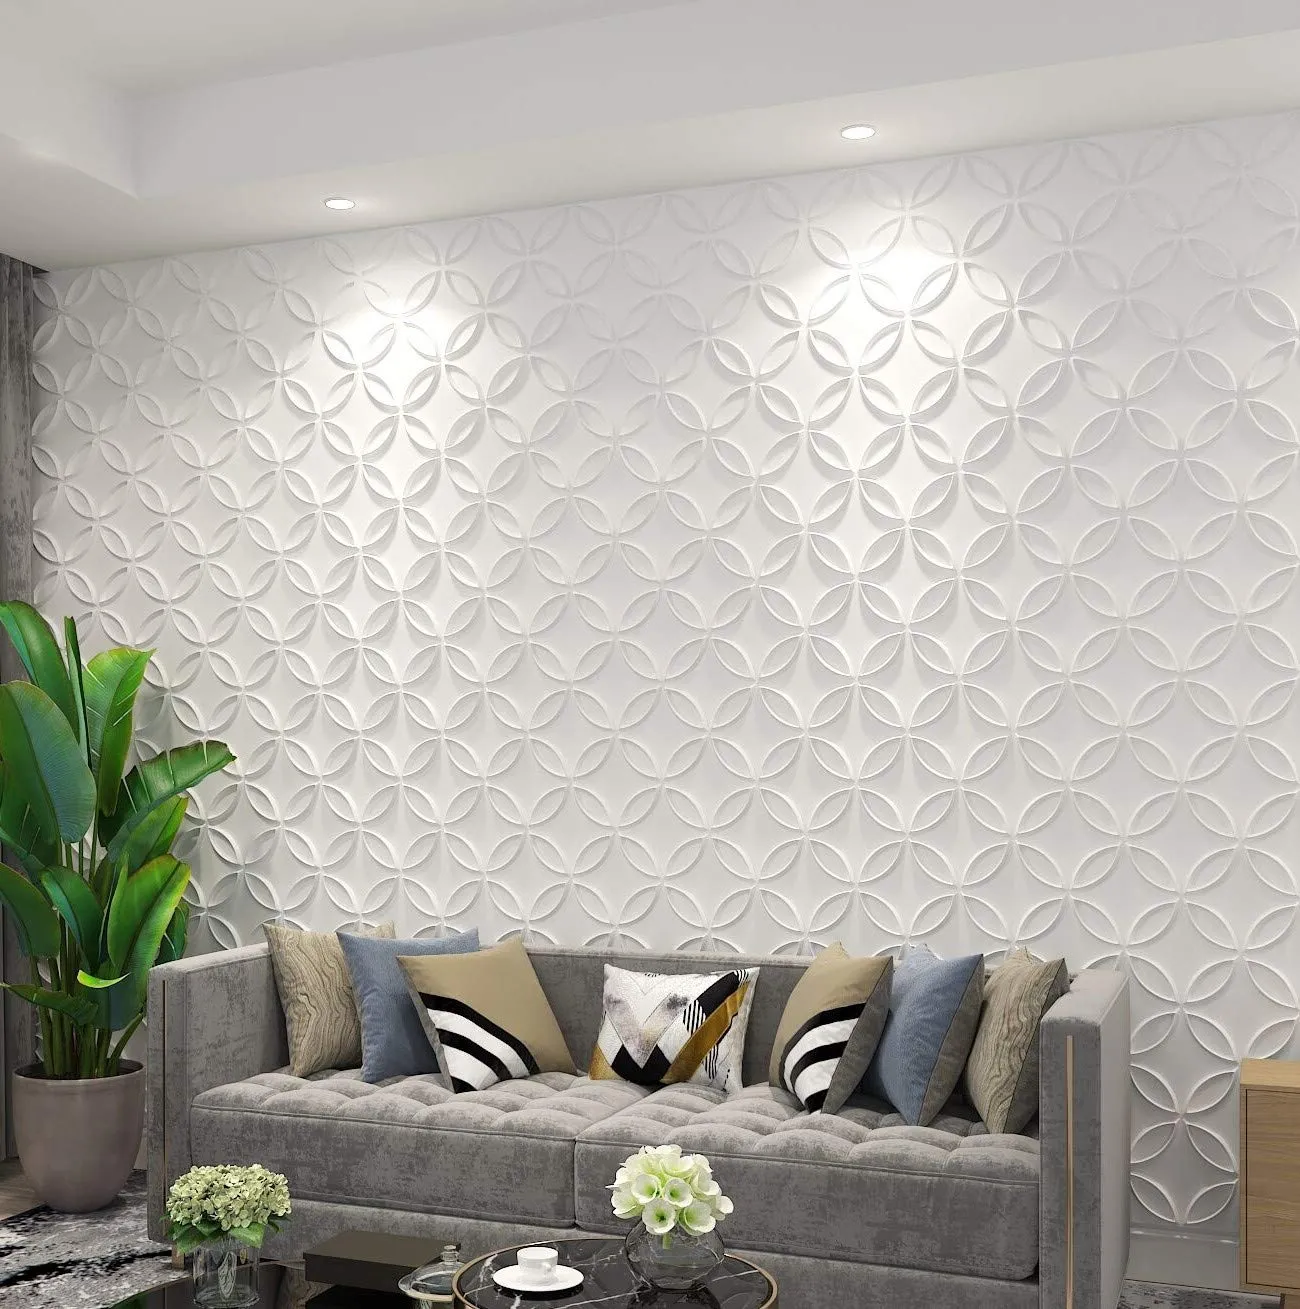 Art3D 50x50cm Paneles de pared 3D Pegatinas insonorizadas Círculos entrelazados Techo interior blanco y decoración del hogar para residenciales o comerciales (12 azulejos)